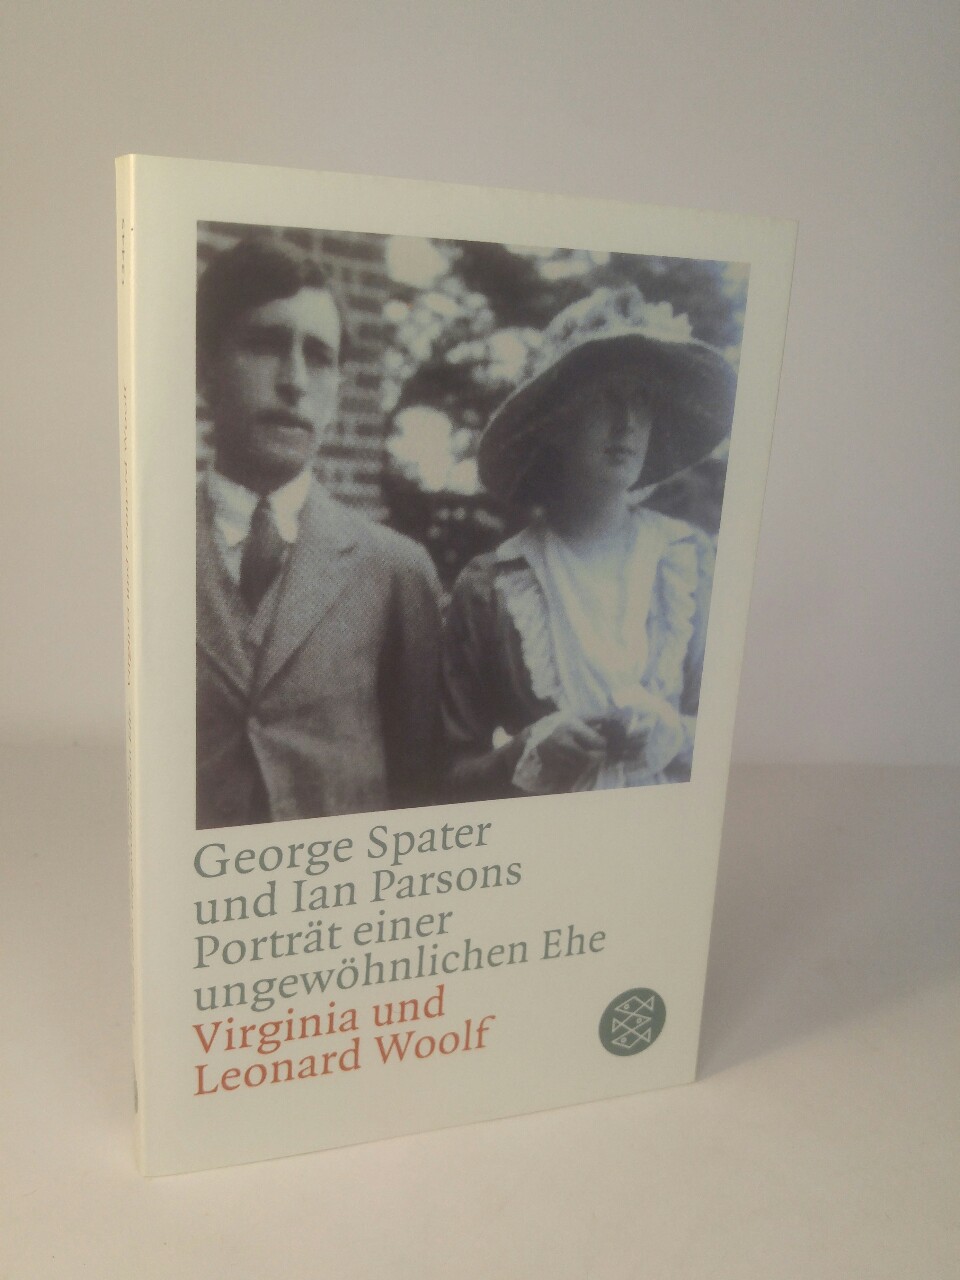 Porträt einer ungewöhnlichen Ehe Virginia & Leonard Woolf 1. Auflage - Parsons, Ian und George Spater